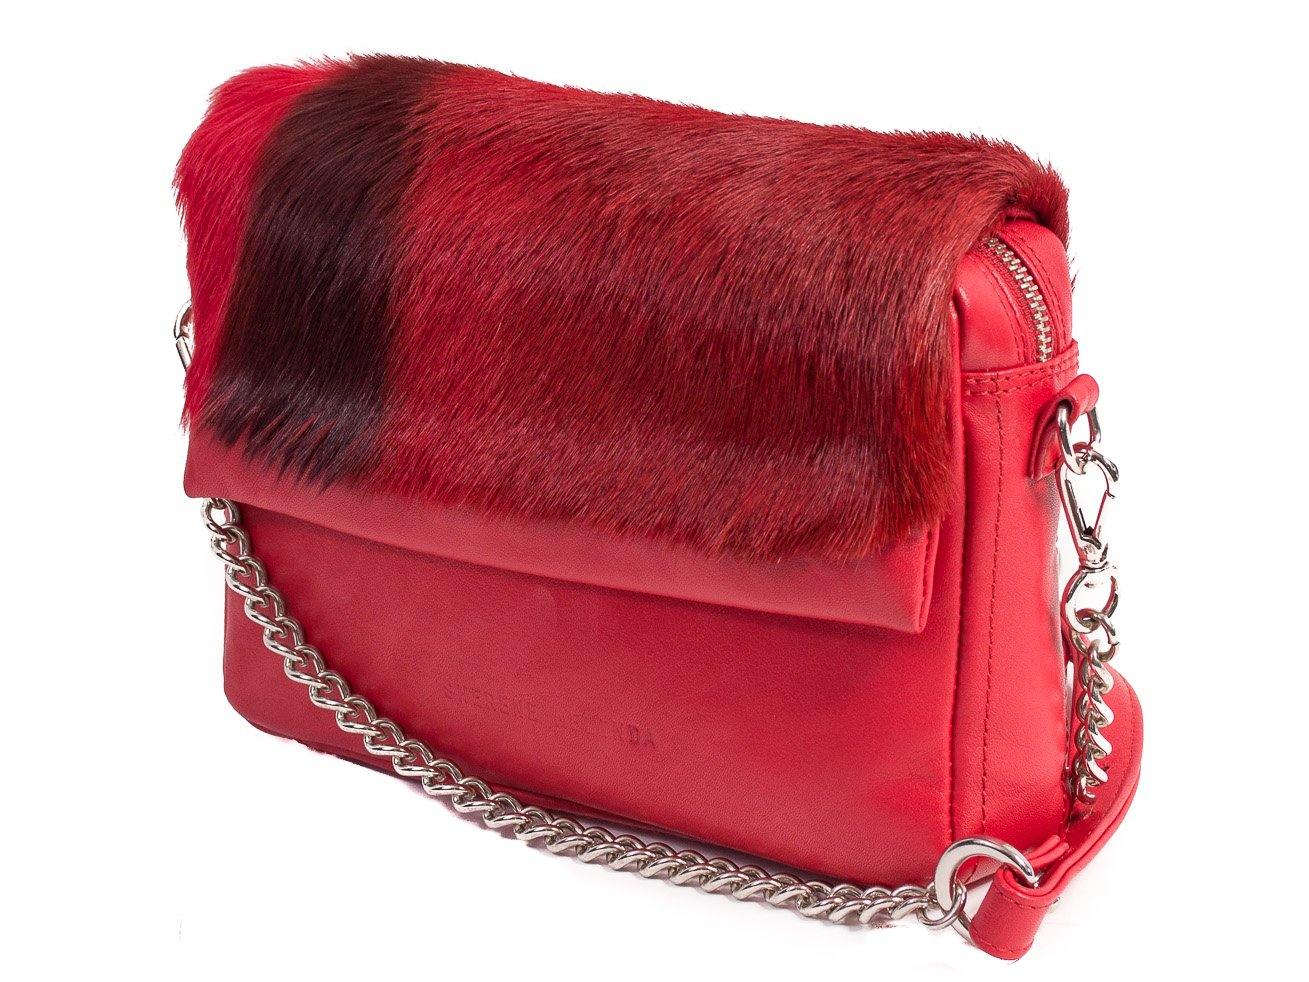 sherene melinda springbok hair-on-hide red leather shoulder bag Stripe side angle strap